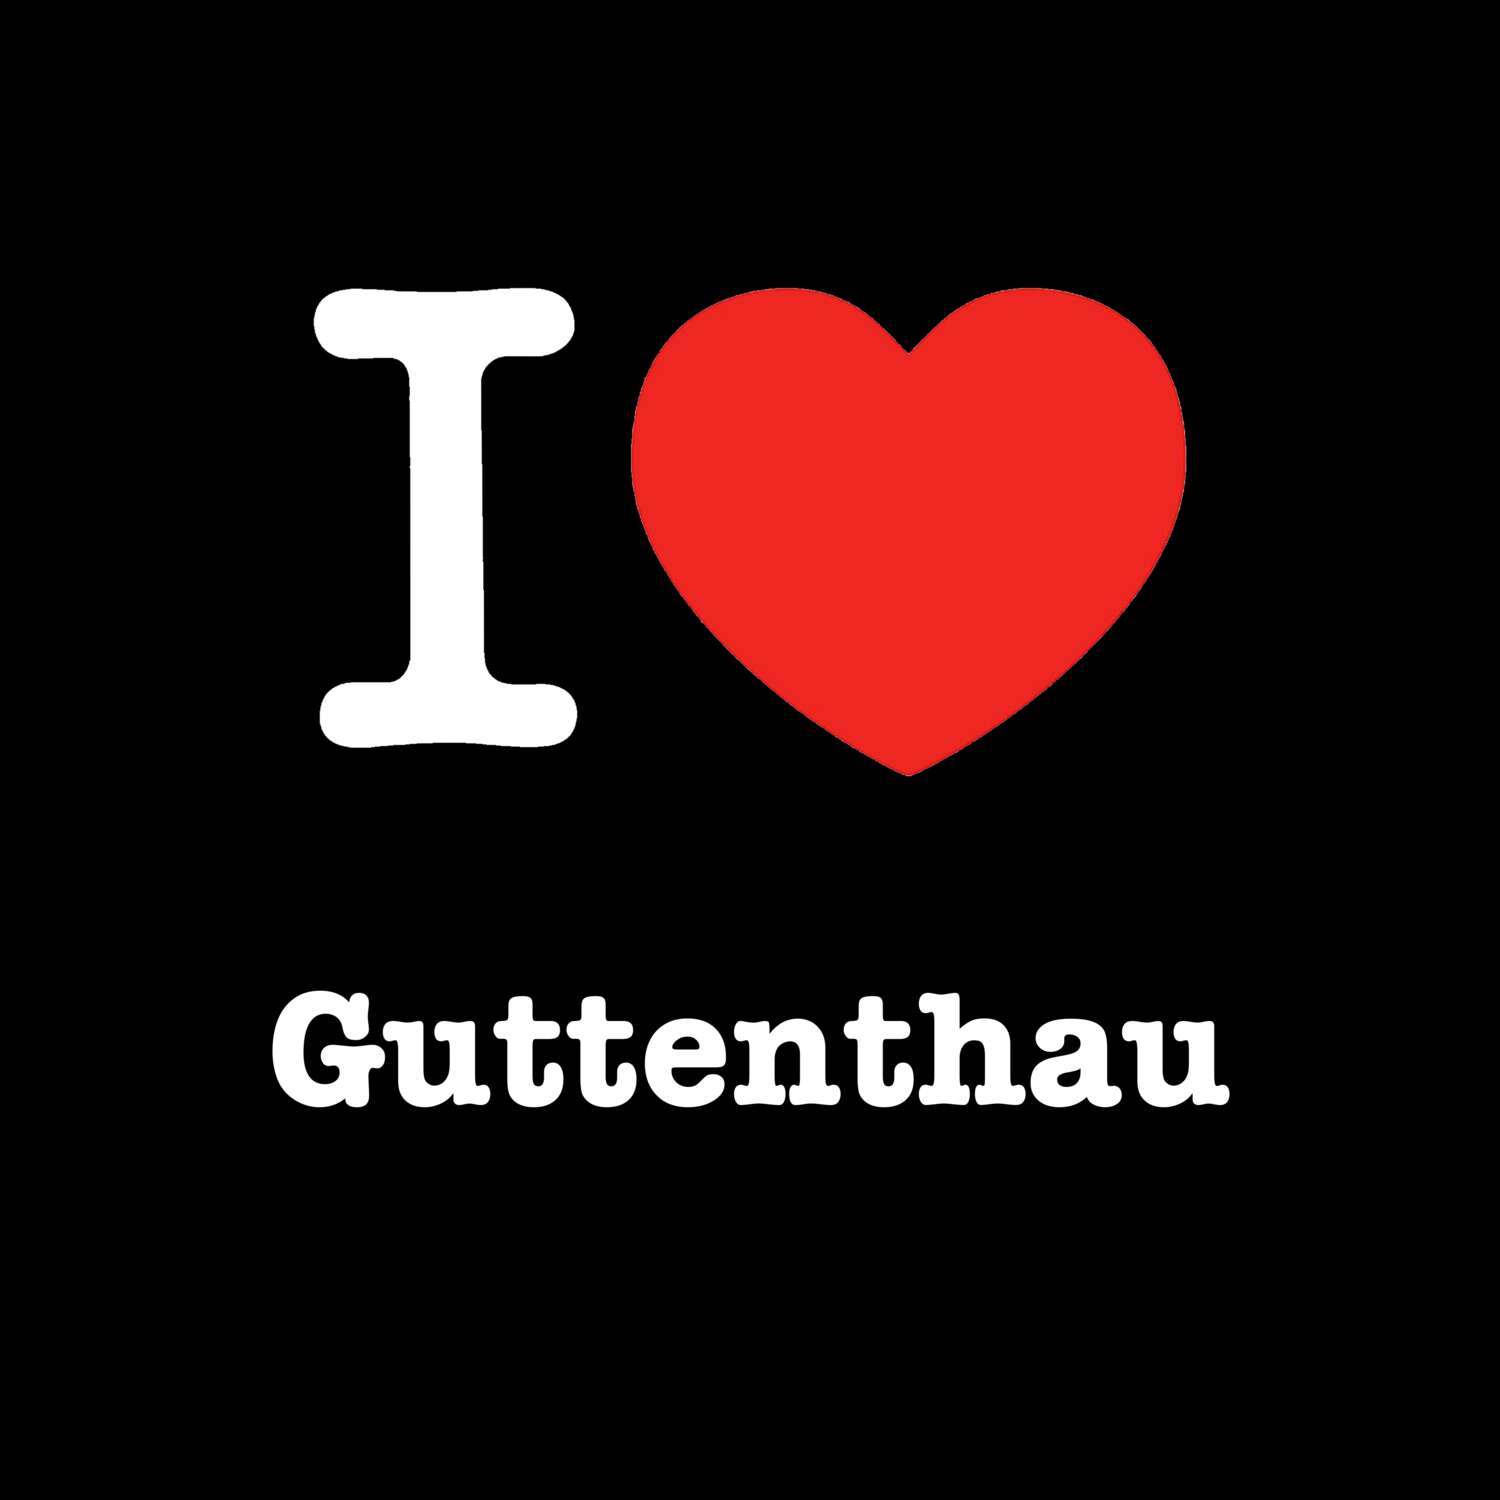 Guttenthau T-Shirt »I love«